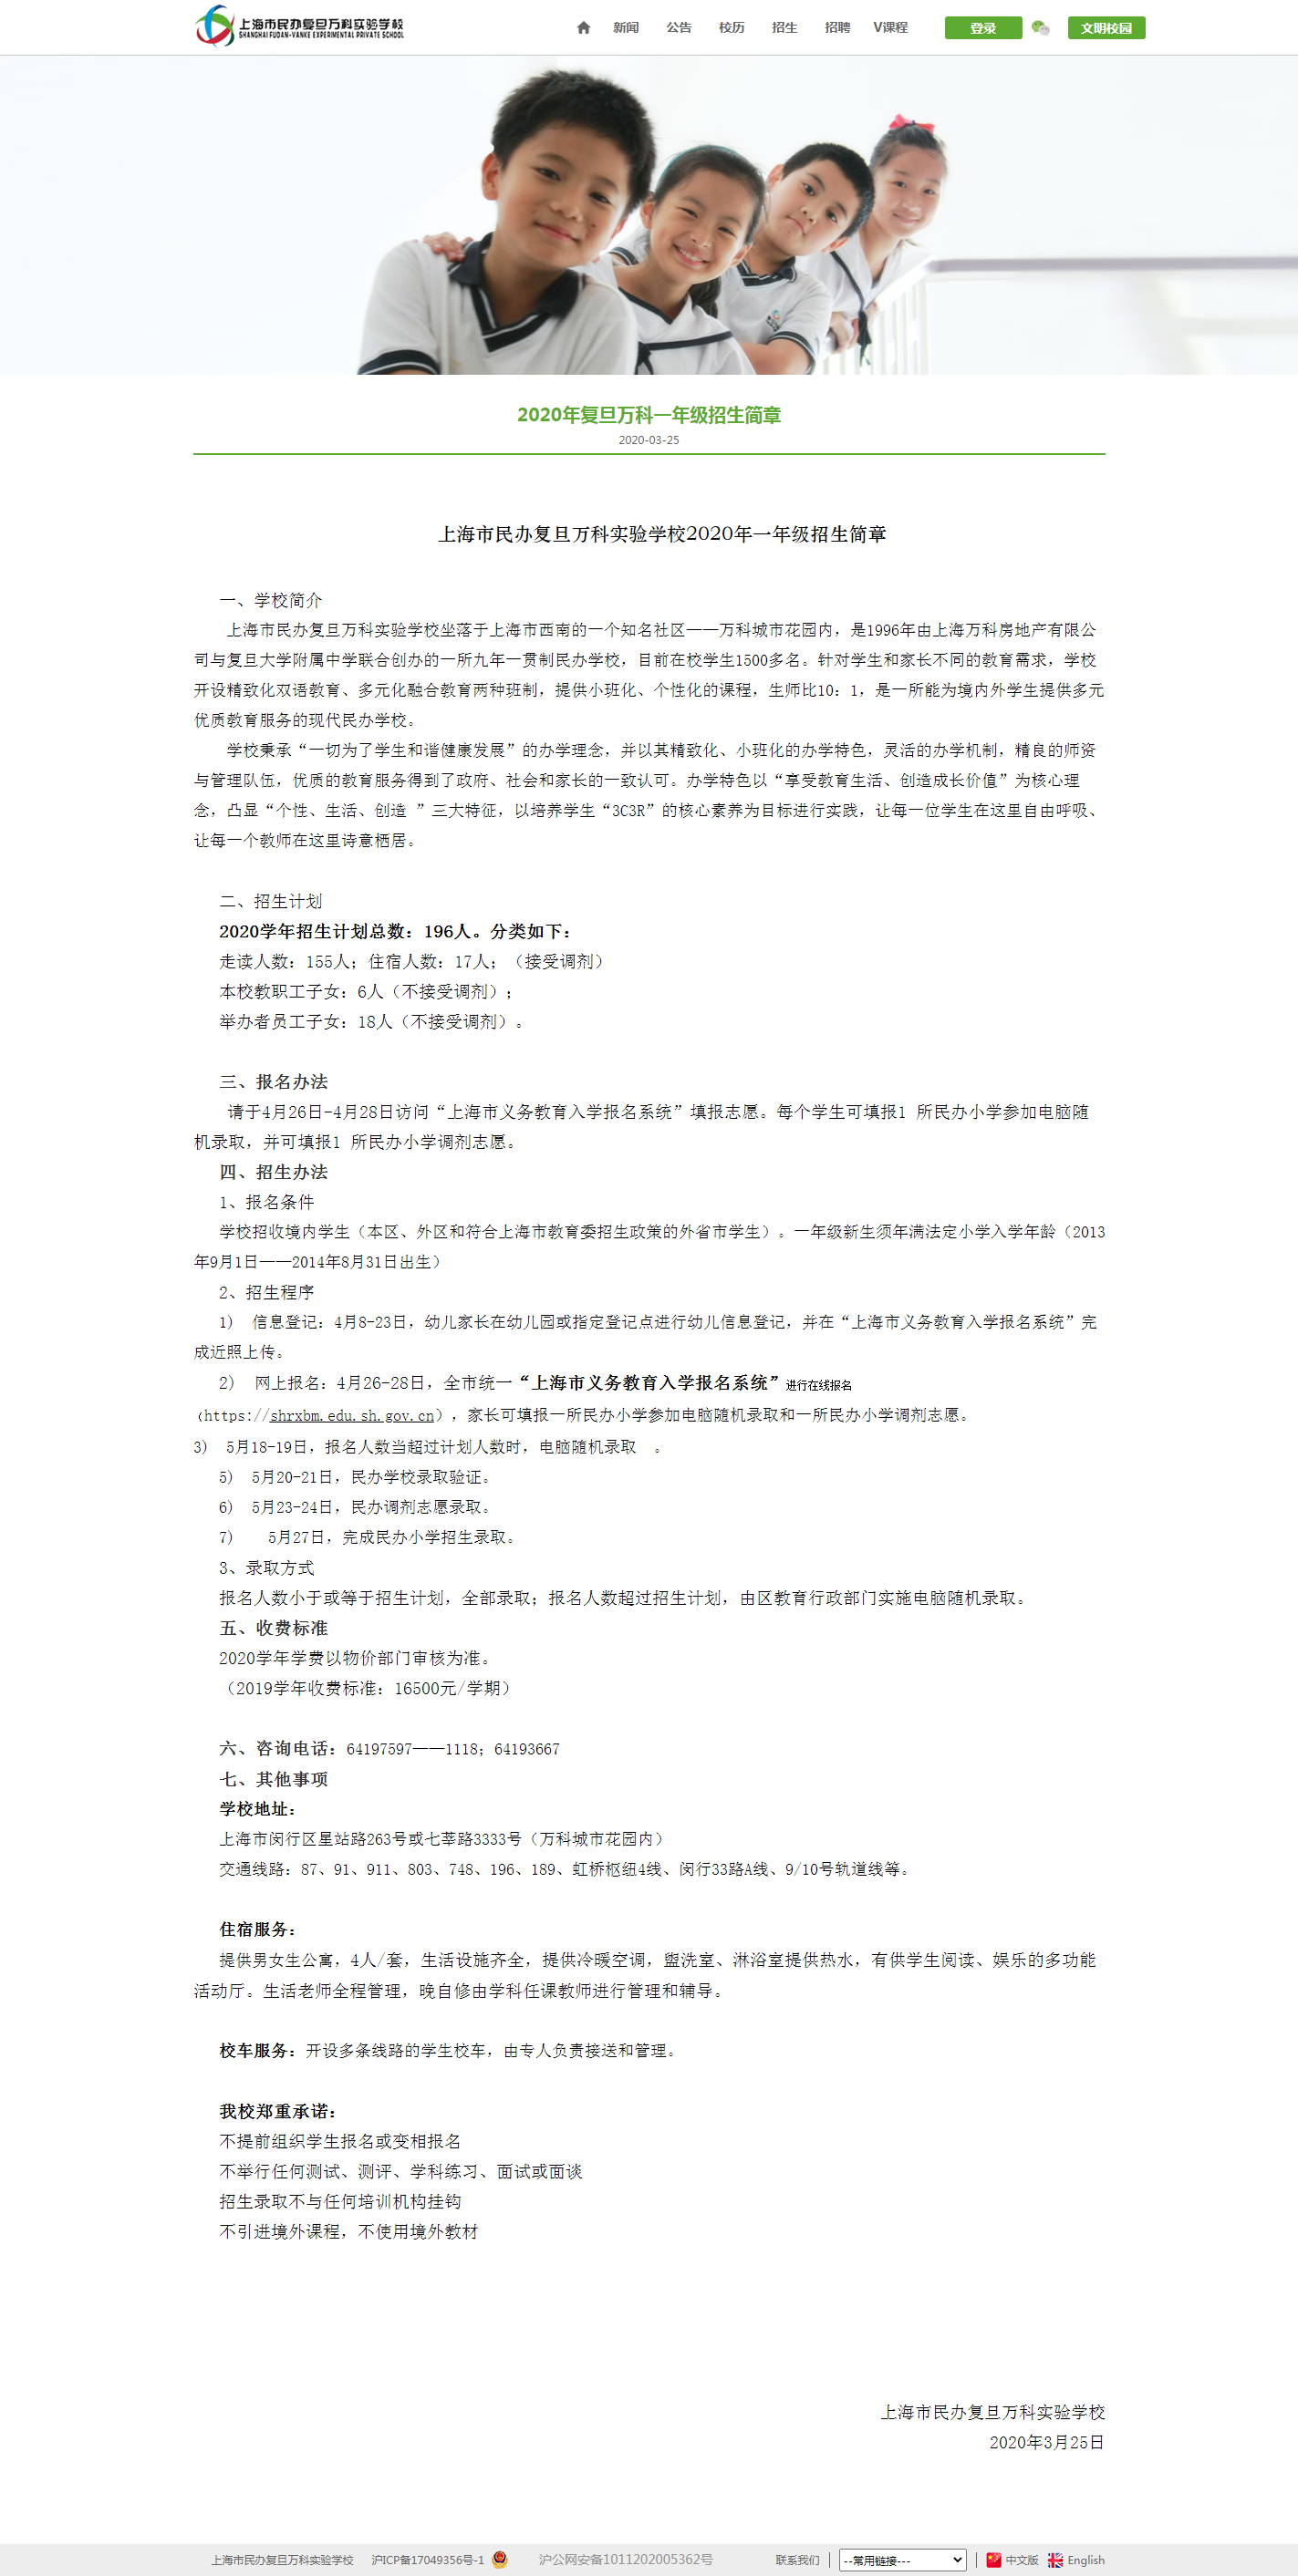 screenshot-www.vks.cn-2020.07.21-01_15_13.png